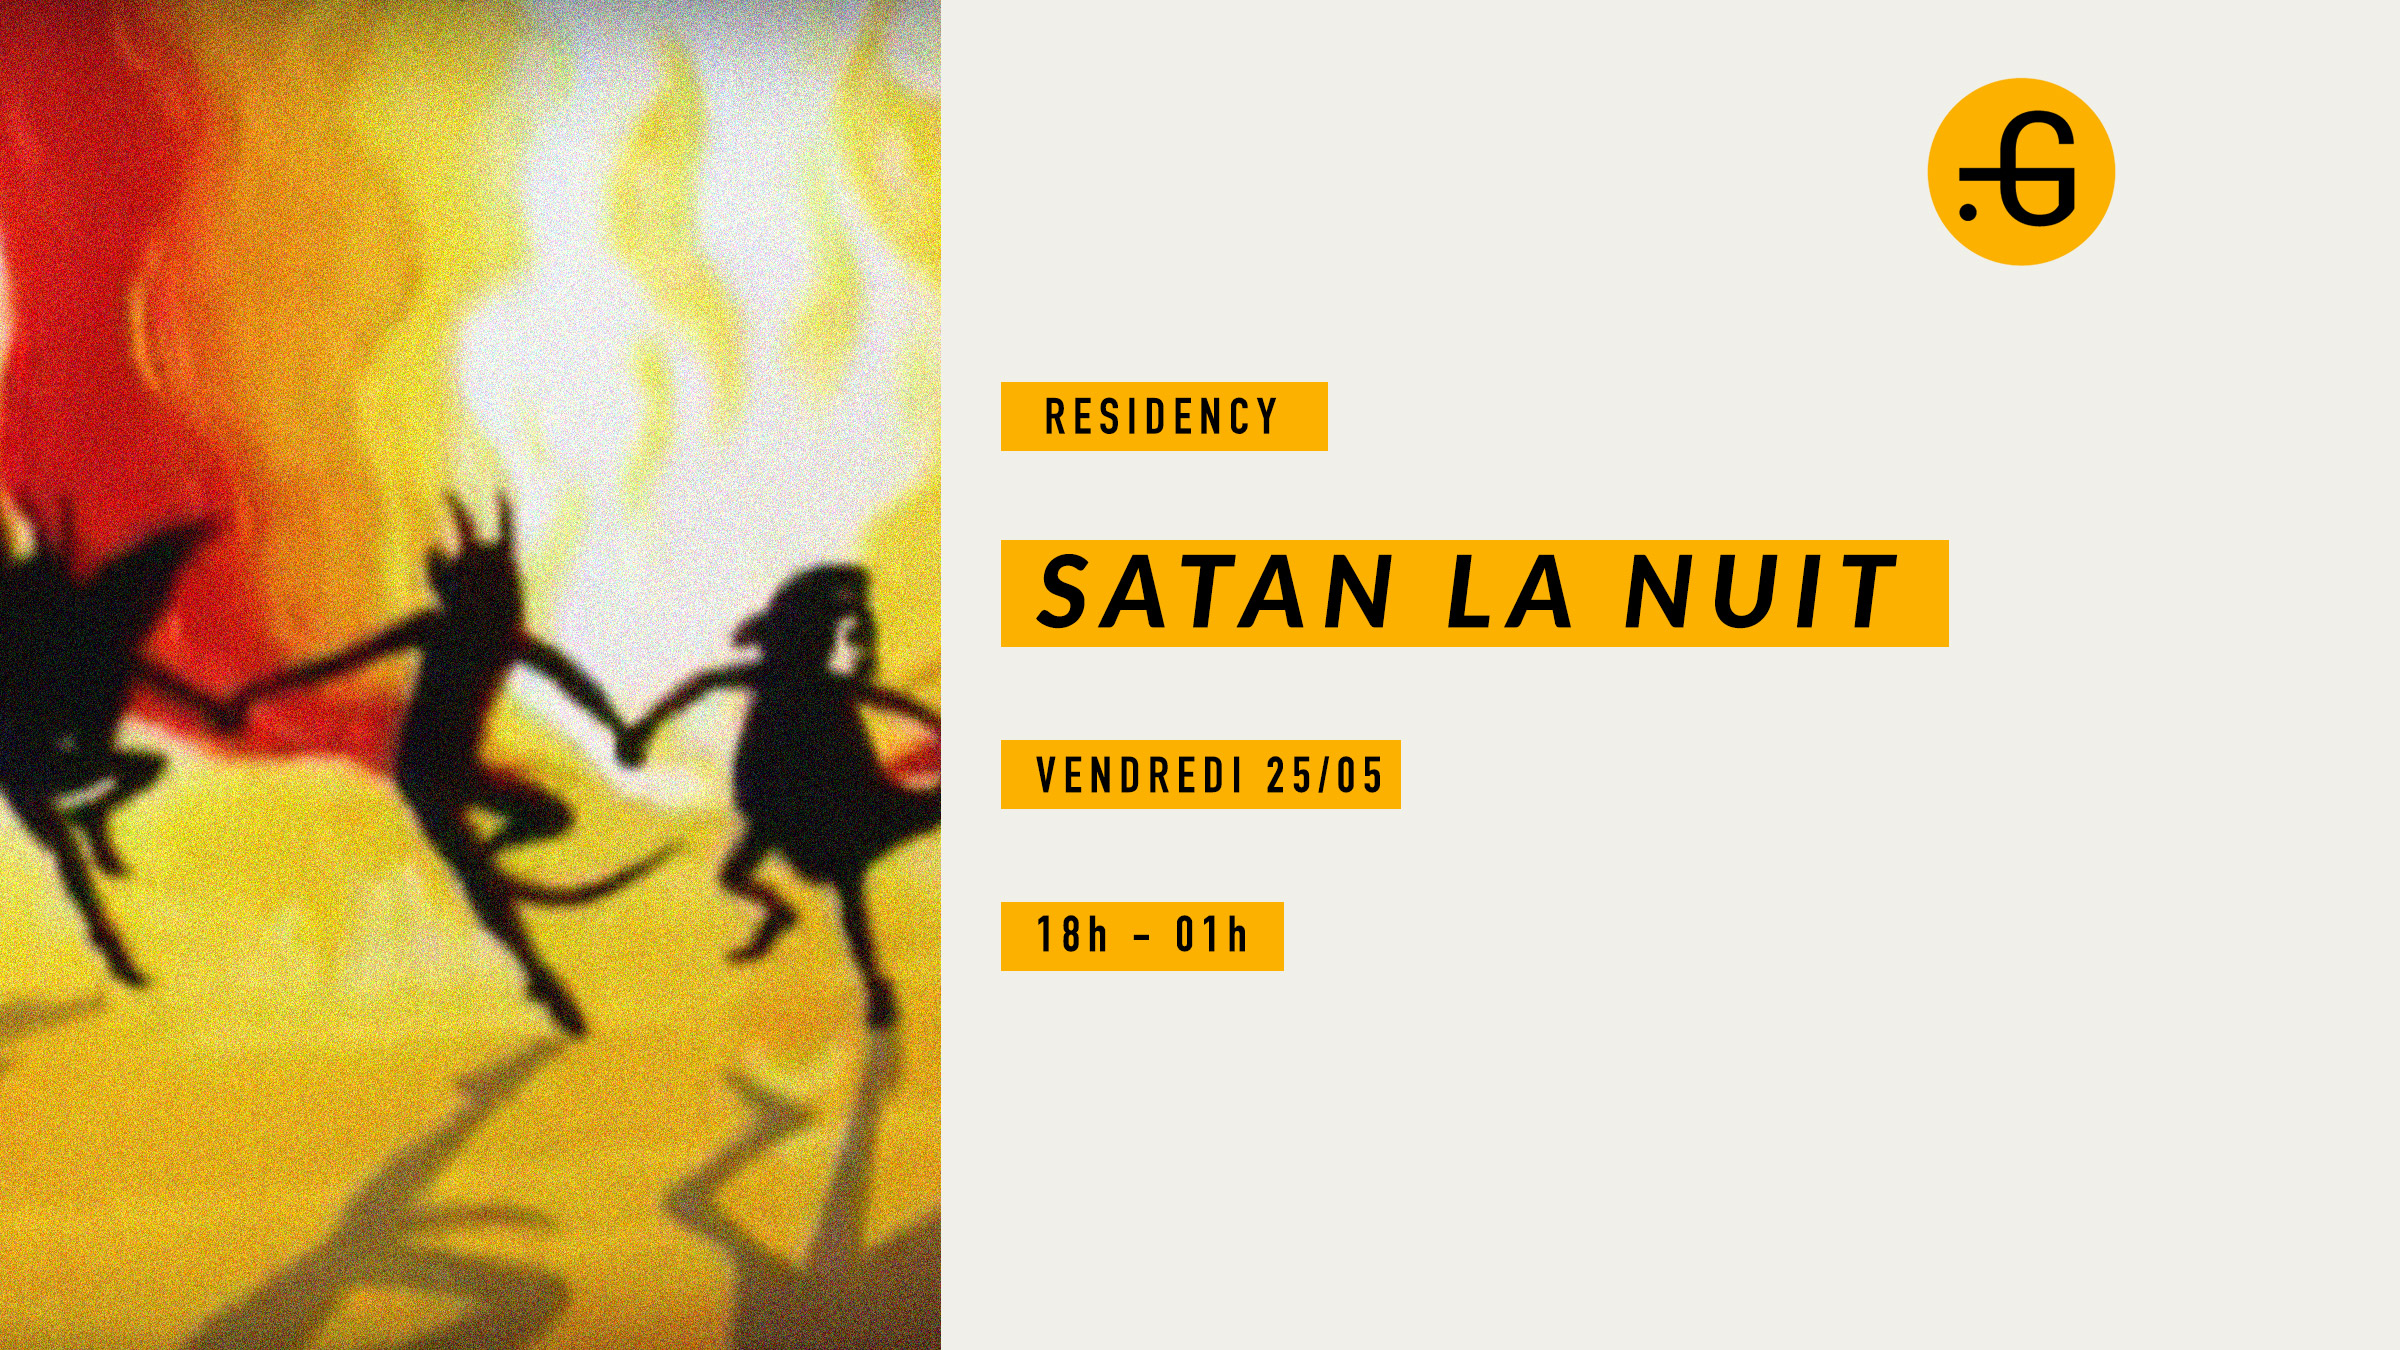 Satan la nuit, vendredi 25 mai 2018